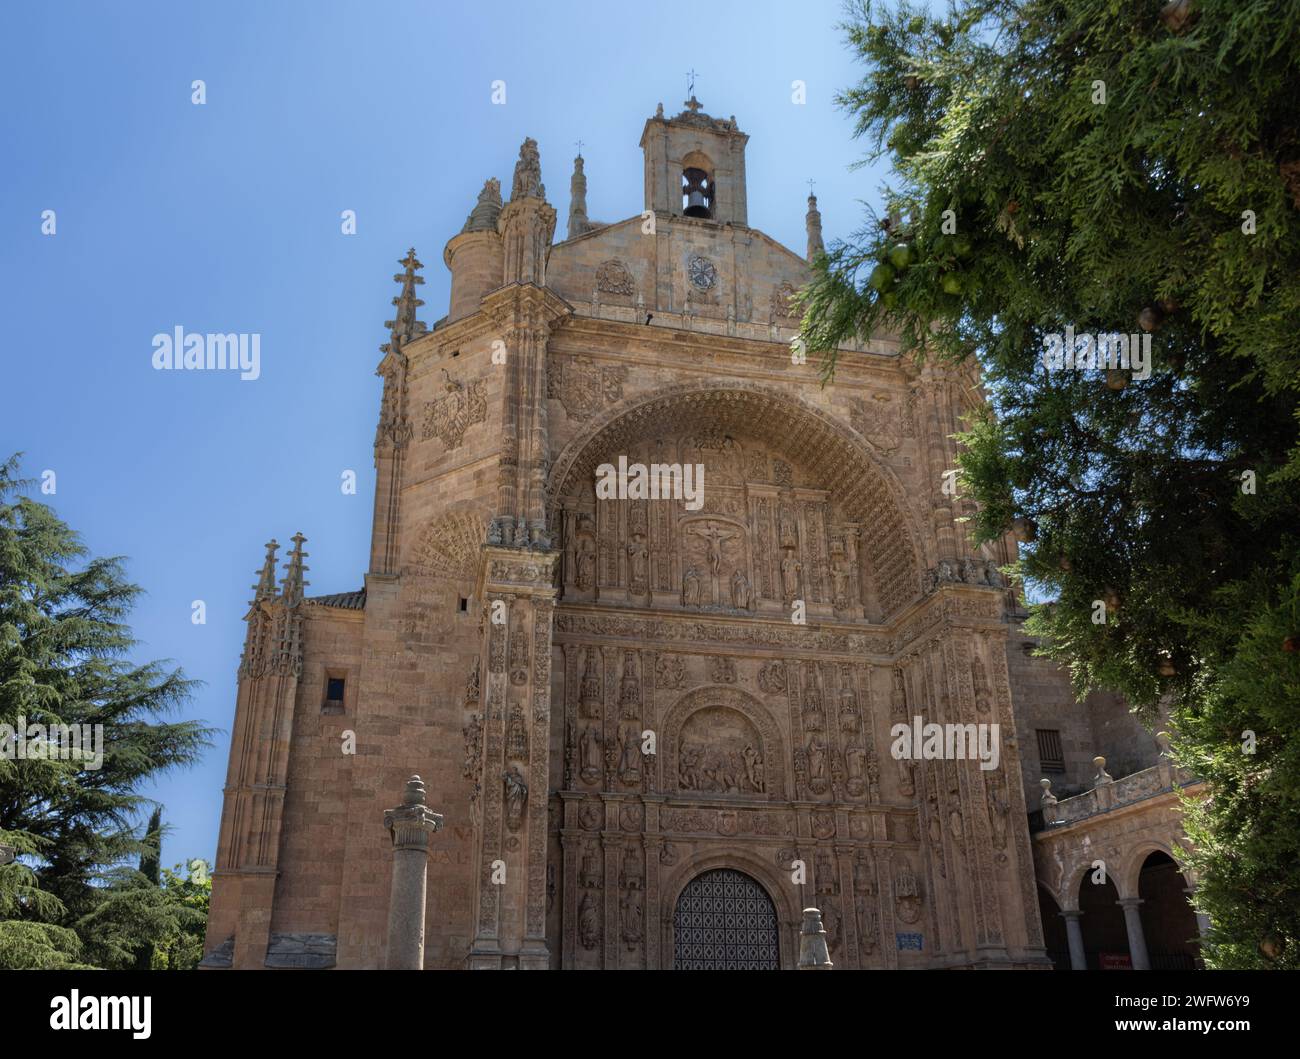 Convento de San Esteban de la orden dominicana, de estilo gótico pero con decoración plateresca, Salamanca, España Stock Photo